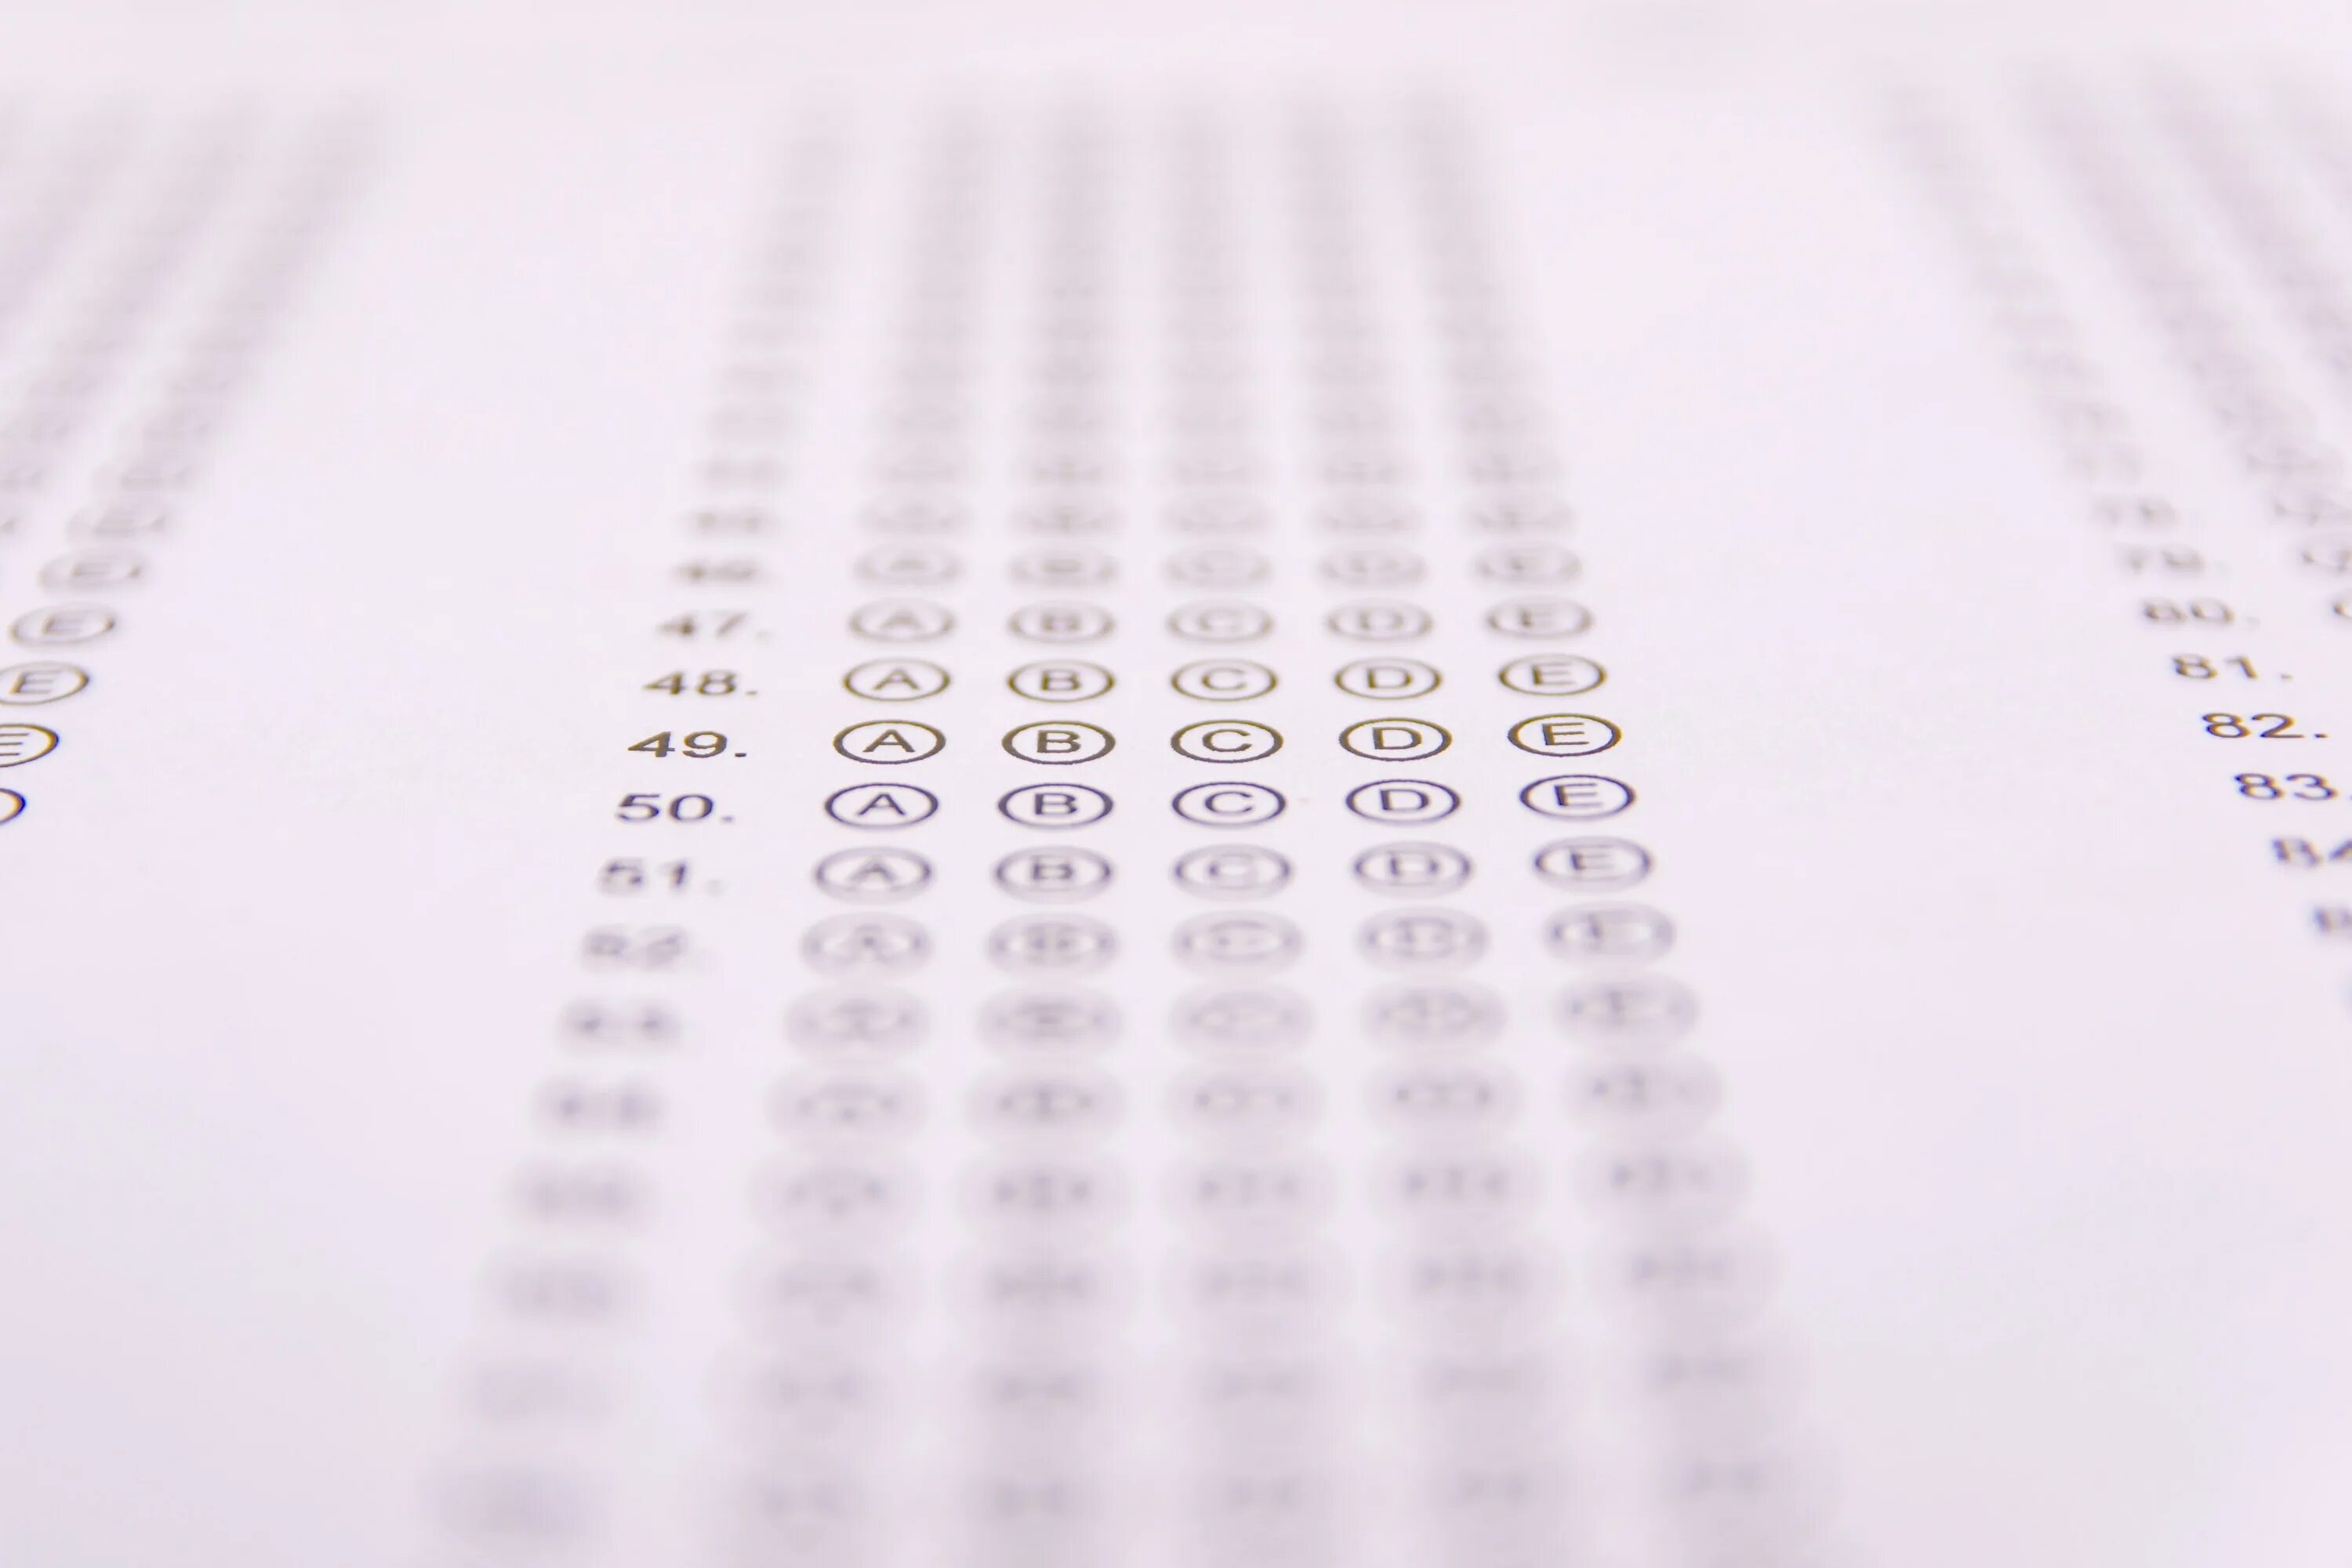 Ответы листы бумаги 2 по 5. Лист ответов sat. Лист с тестированием картинка. Лист ответов ДТМ. Листы тестовых заданий на столе.